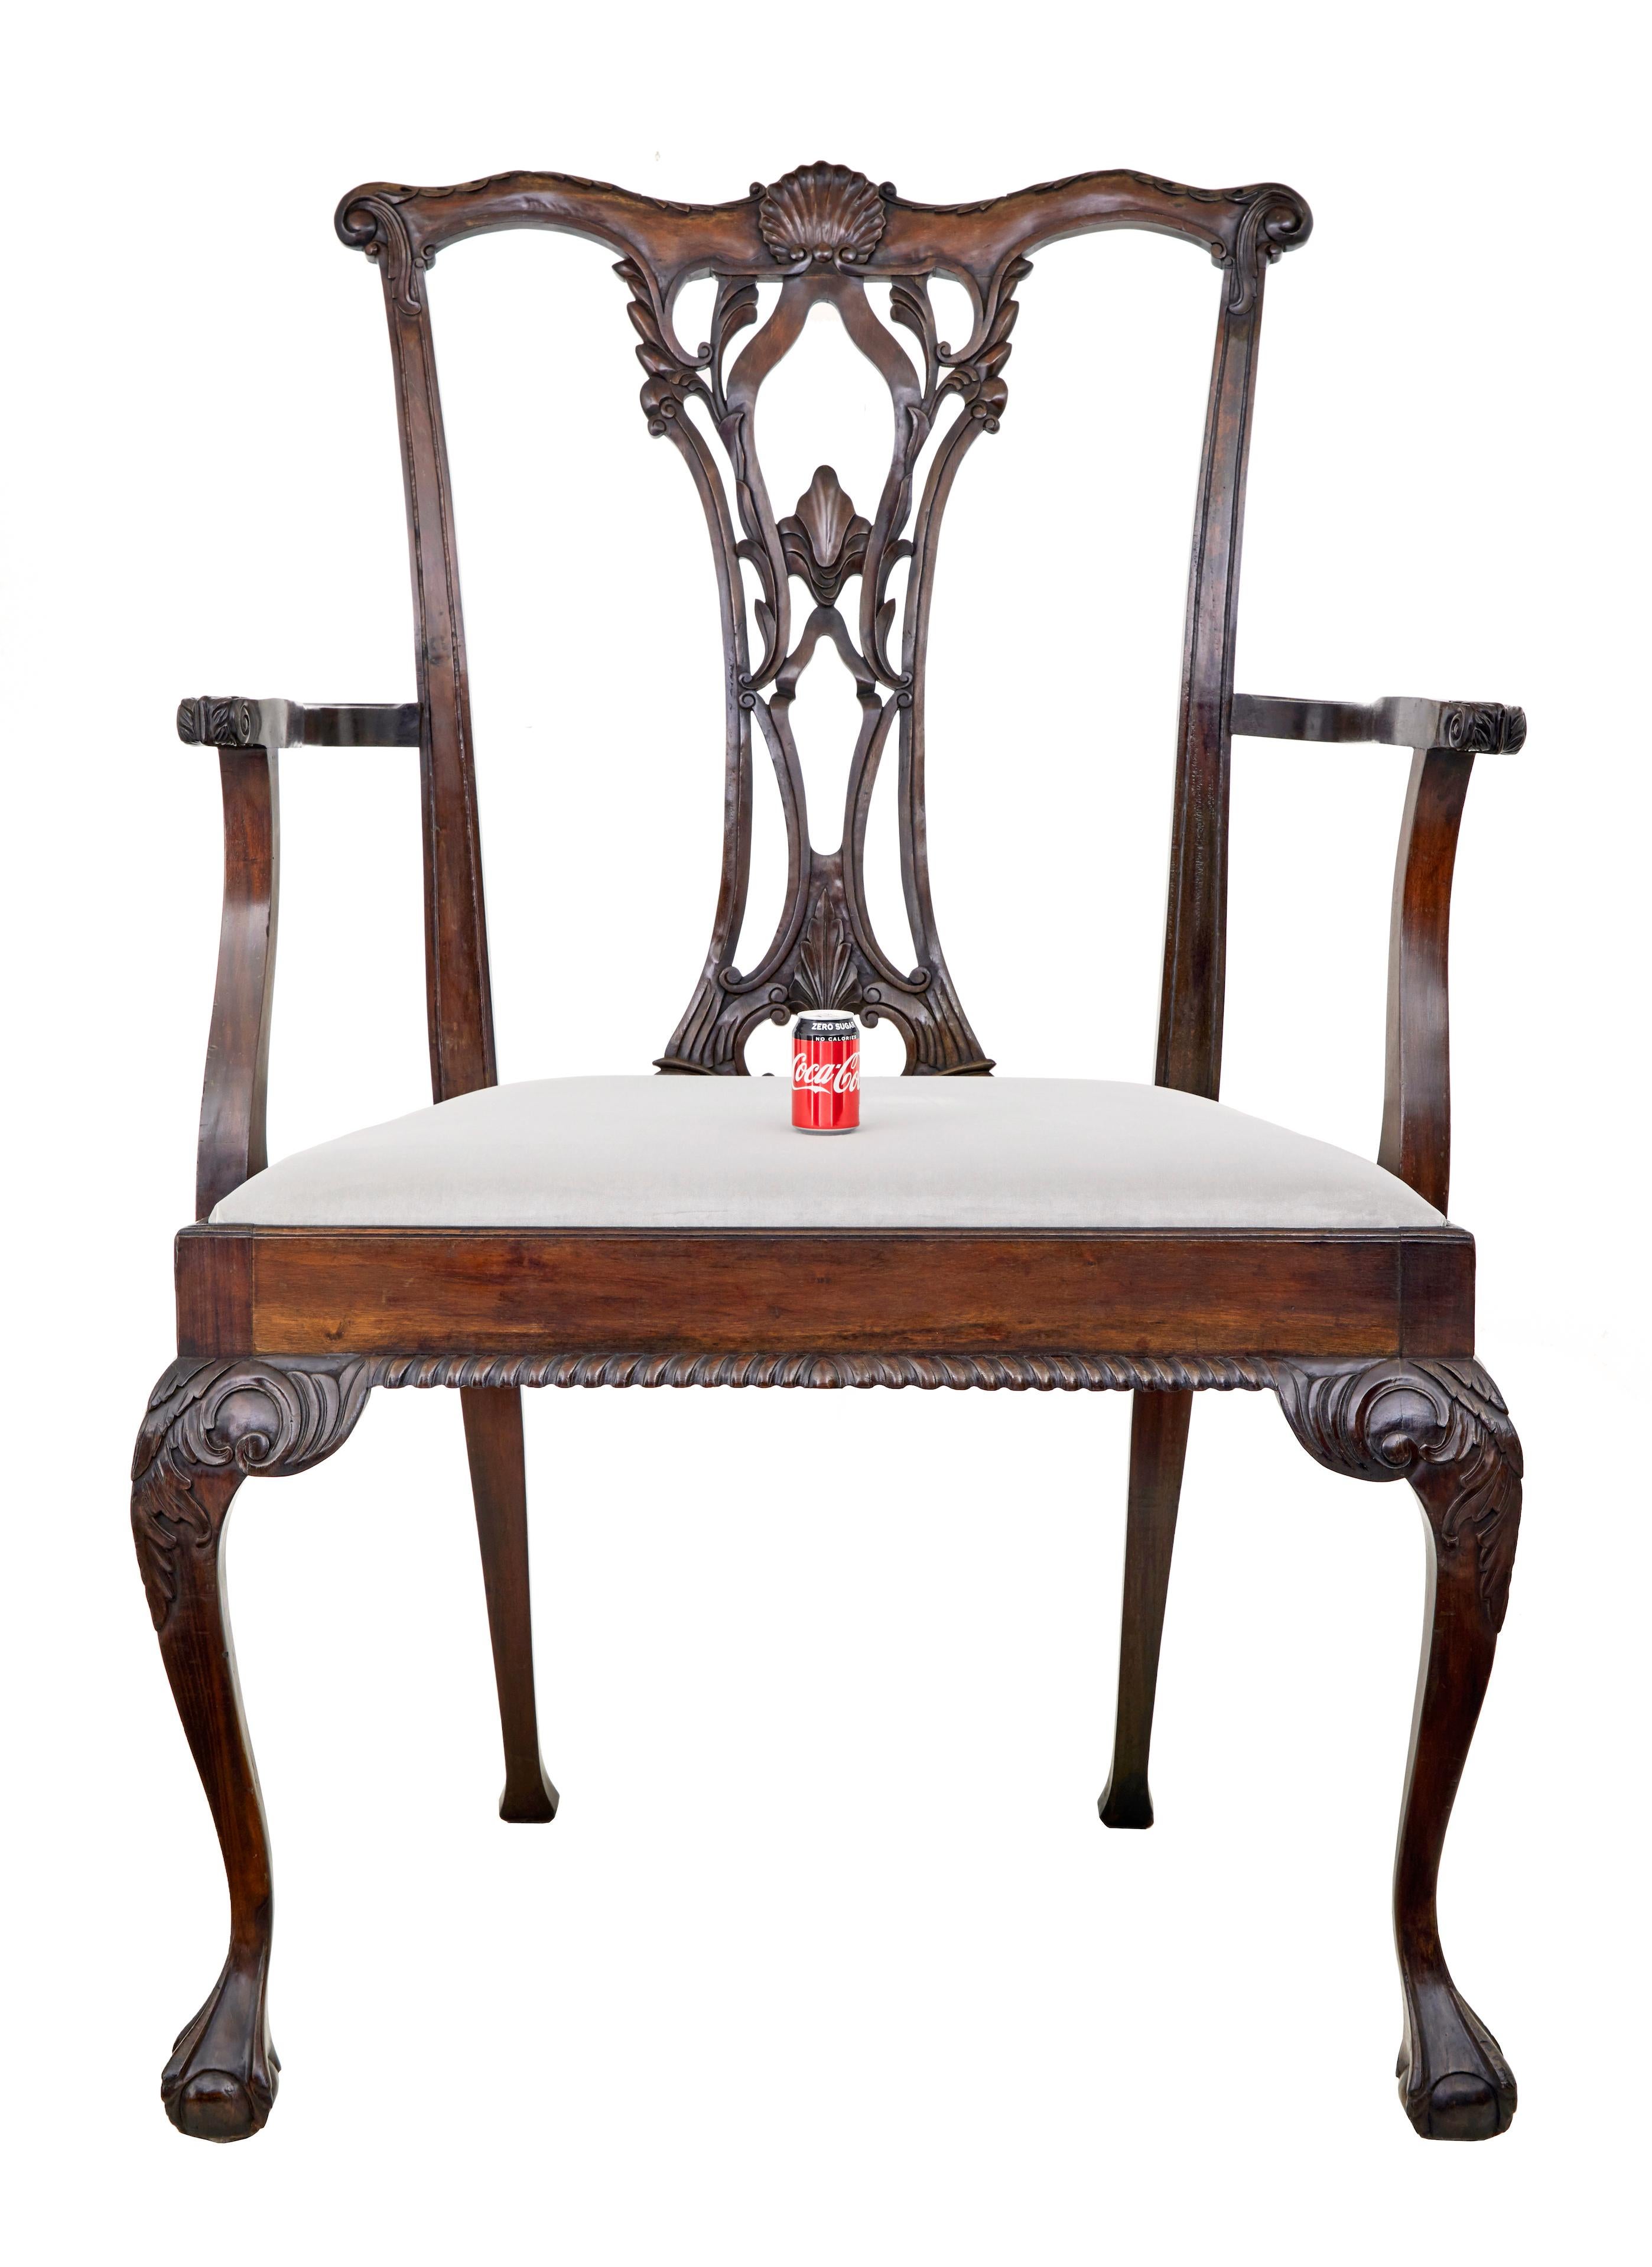 Ungewöhnlicher übergroßer Mahagoni-Esszimmerstuhl im Chippendale-Stil für die Auslage.

Einzigartige Gelegenheit, diesen seltenen dekorativen Stuhl zu besitzen, der offensichtlich eine besondere Auftragsarbeit war.  Mit einer Höhe von über 6 Fuß ist